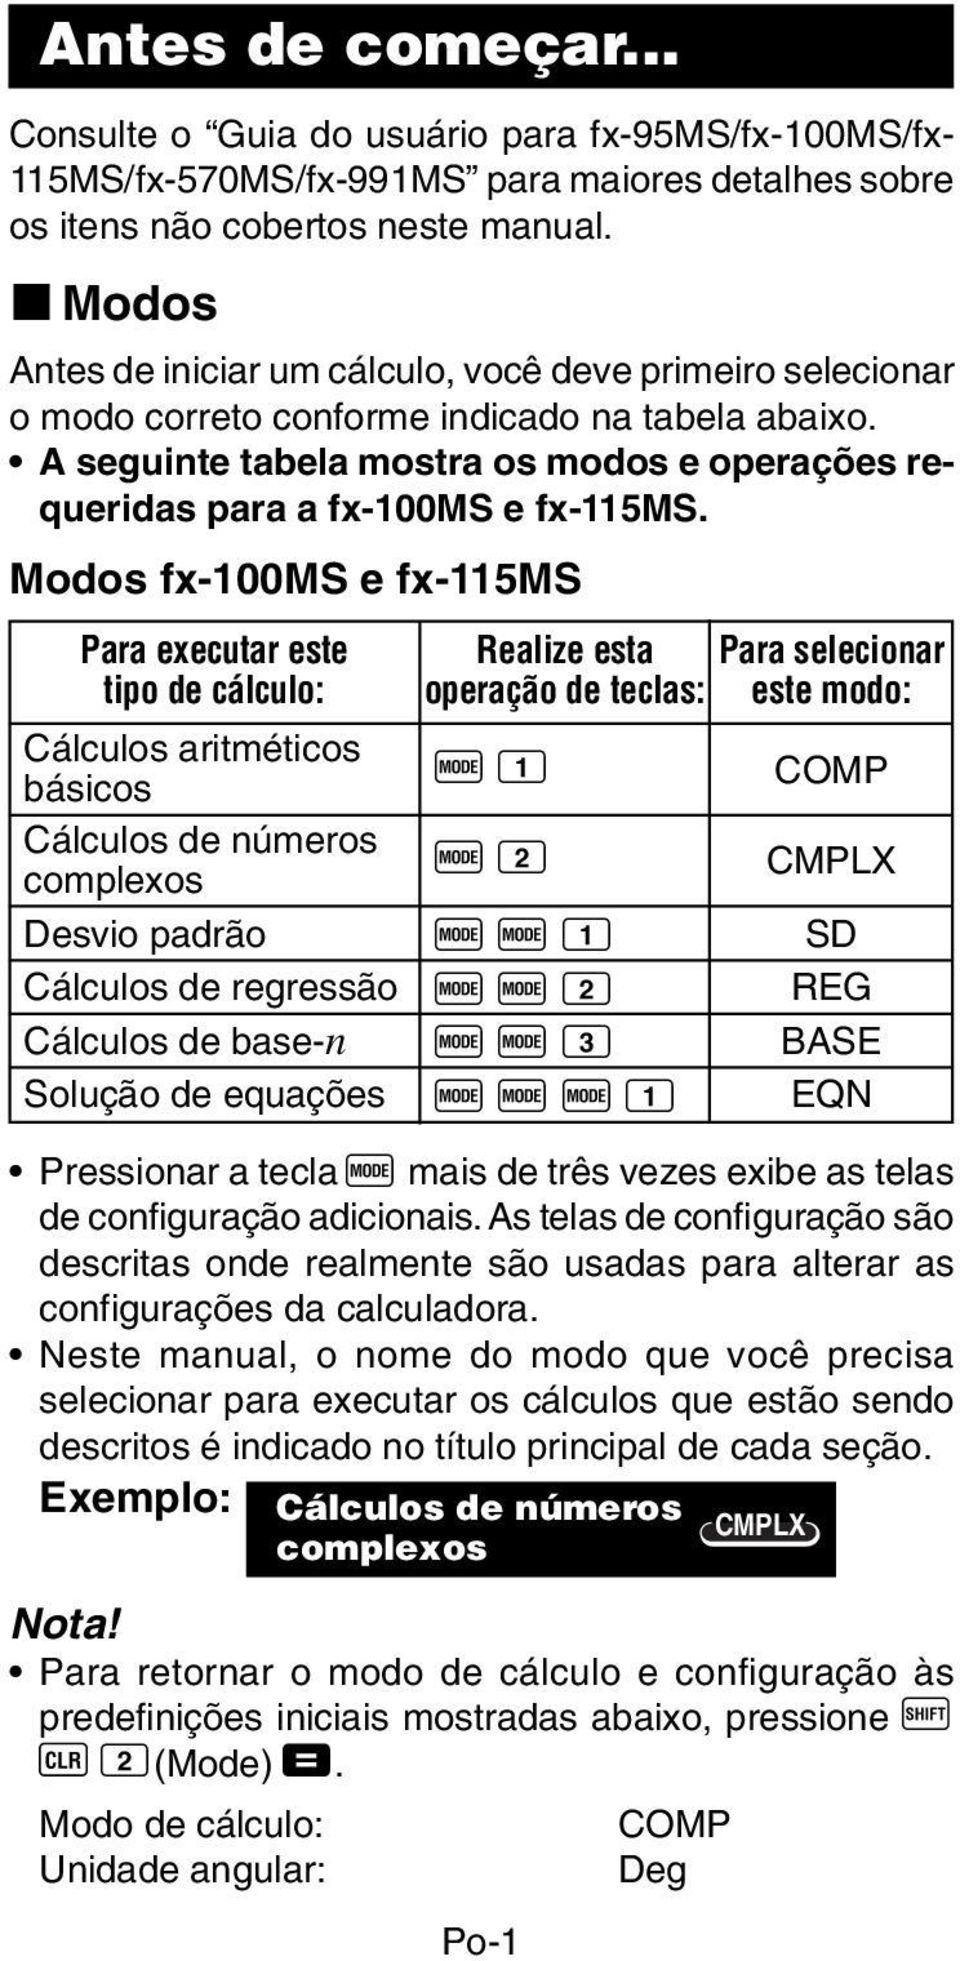 A seguinte tabela mostra os modos e operações requeridas para a fx-100ms e fx-115ms.